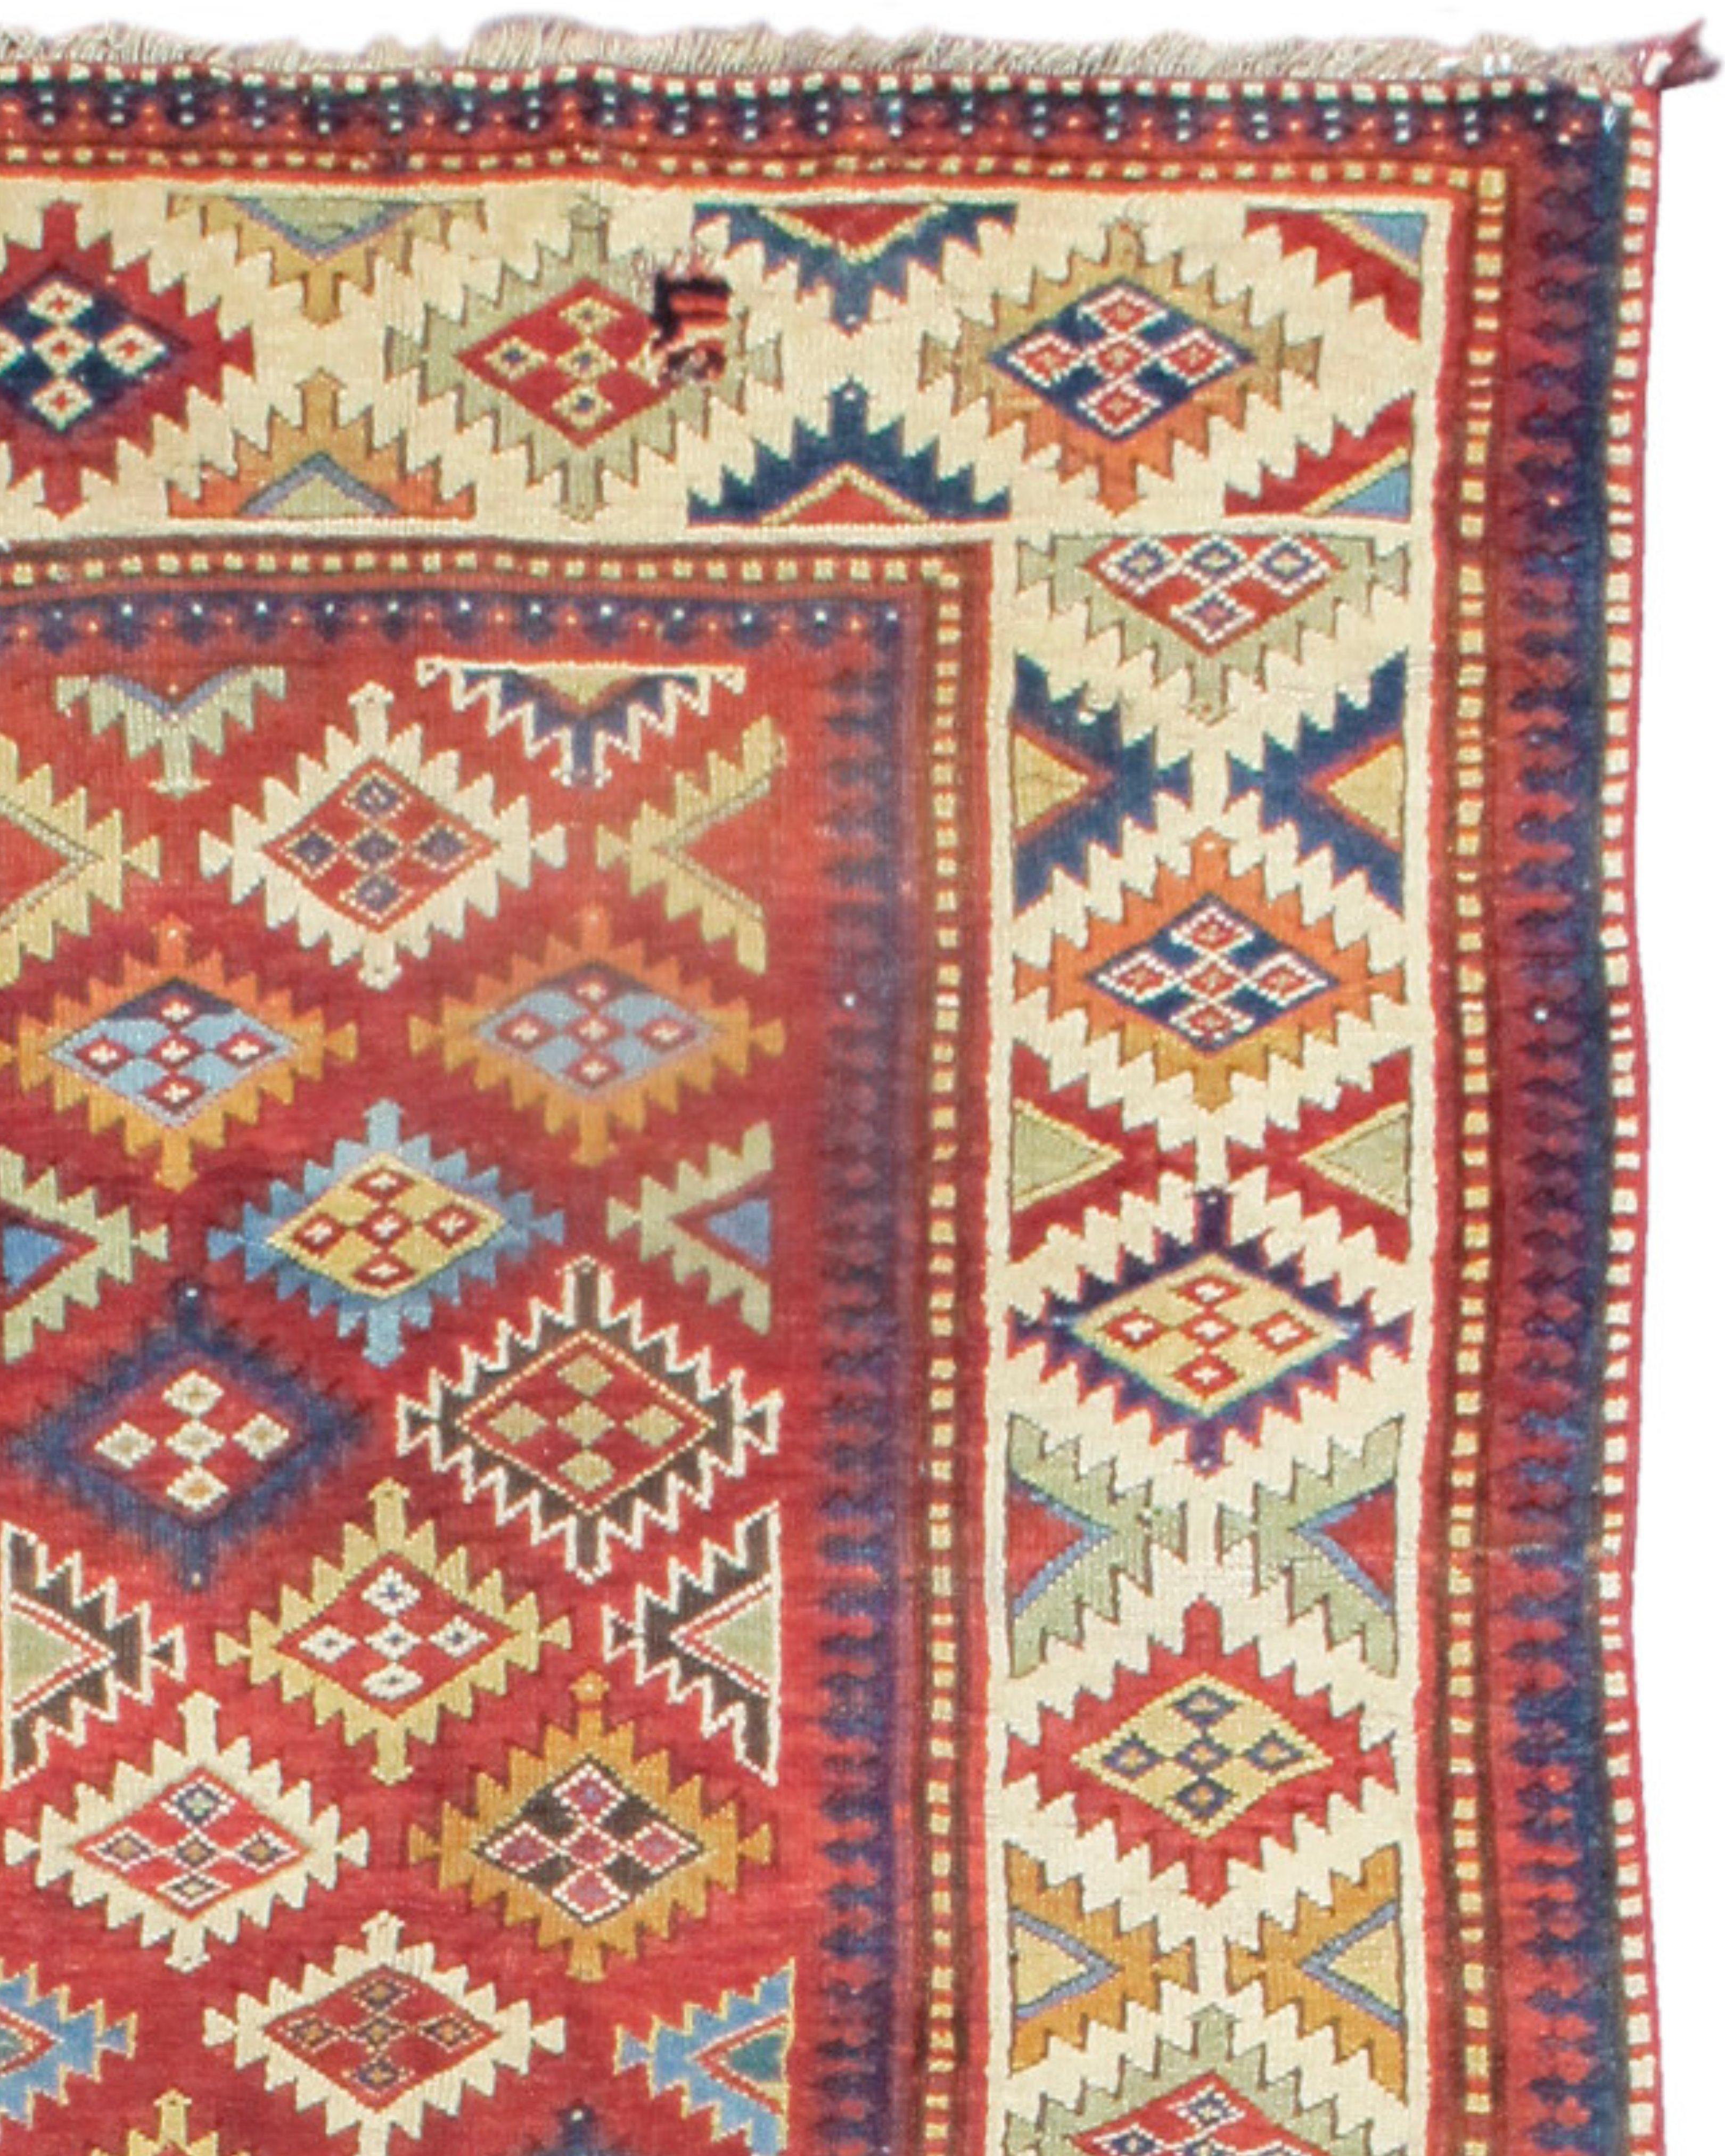 Antiker langer südkaukasischer langer Teppich, spätes 19. Jahrhundert

Zusätzliche Informationen:
Abmessungen: 4'2